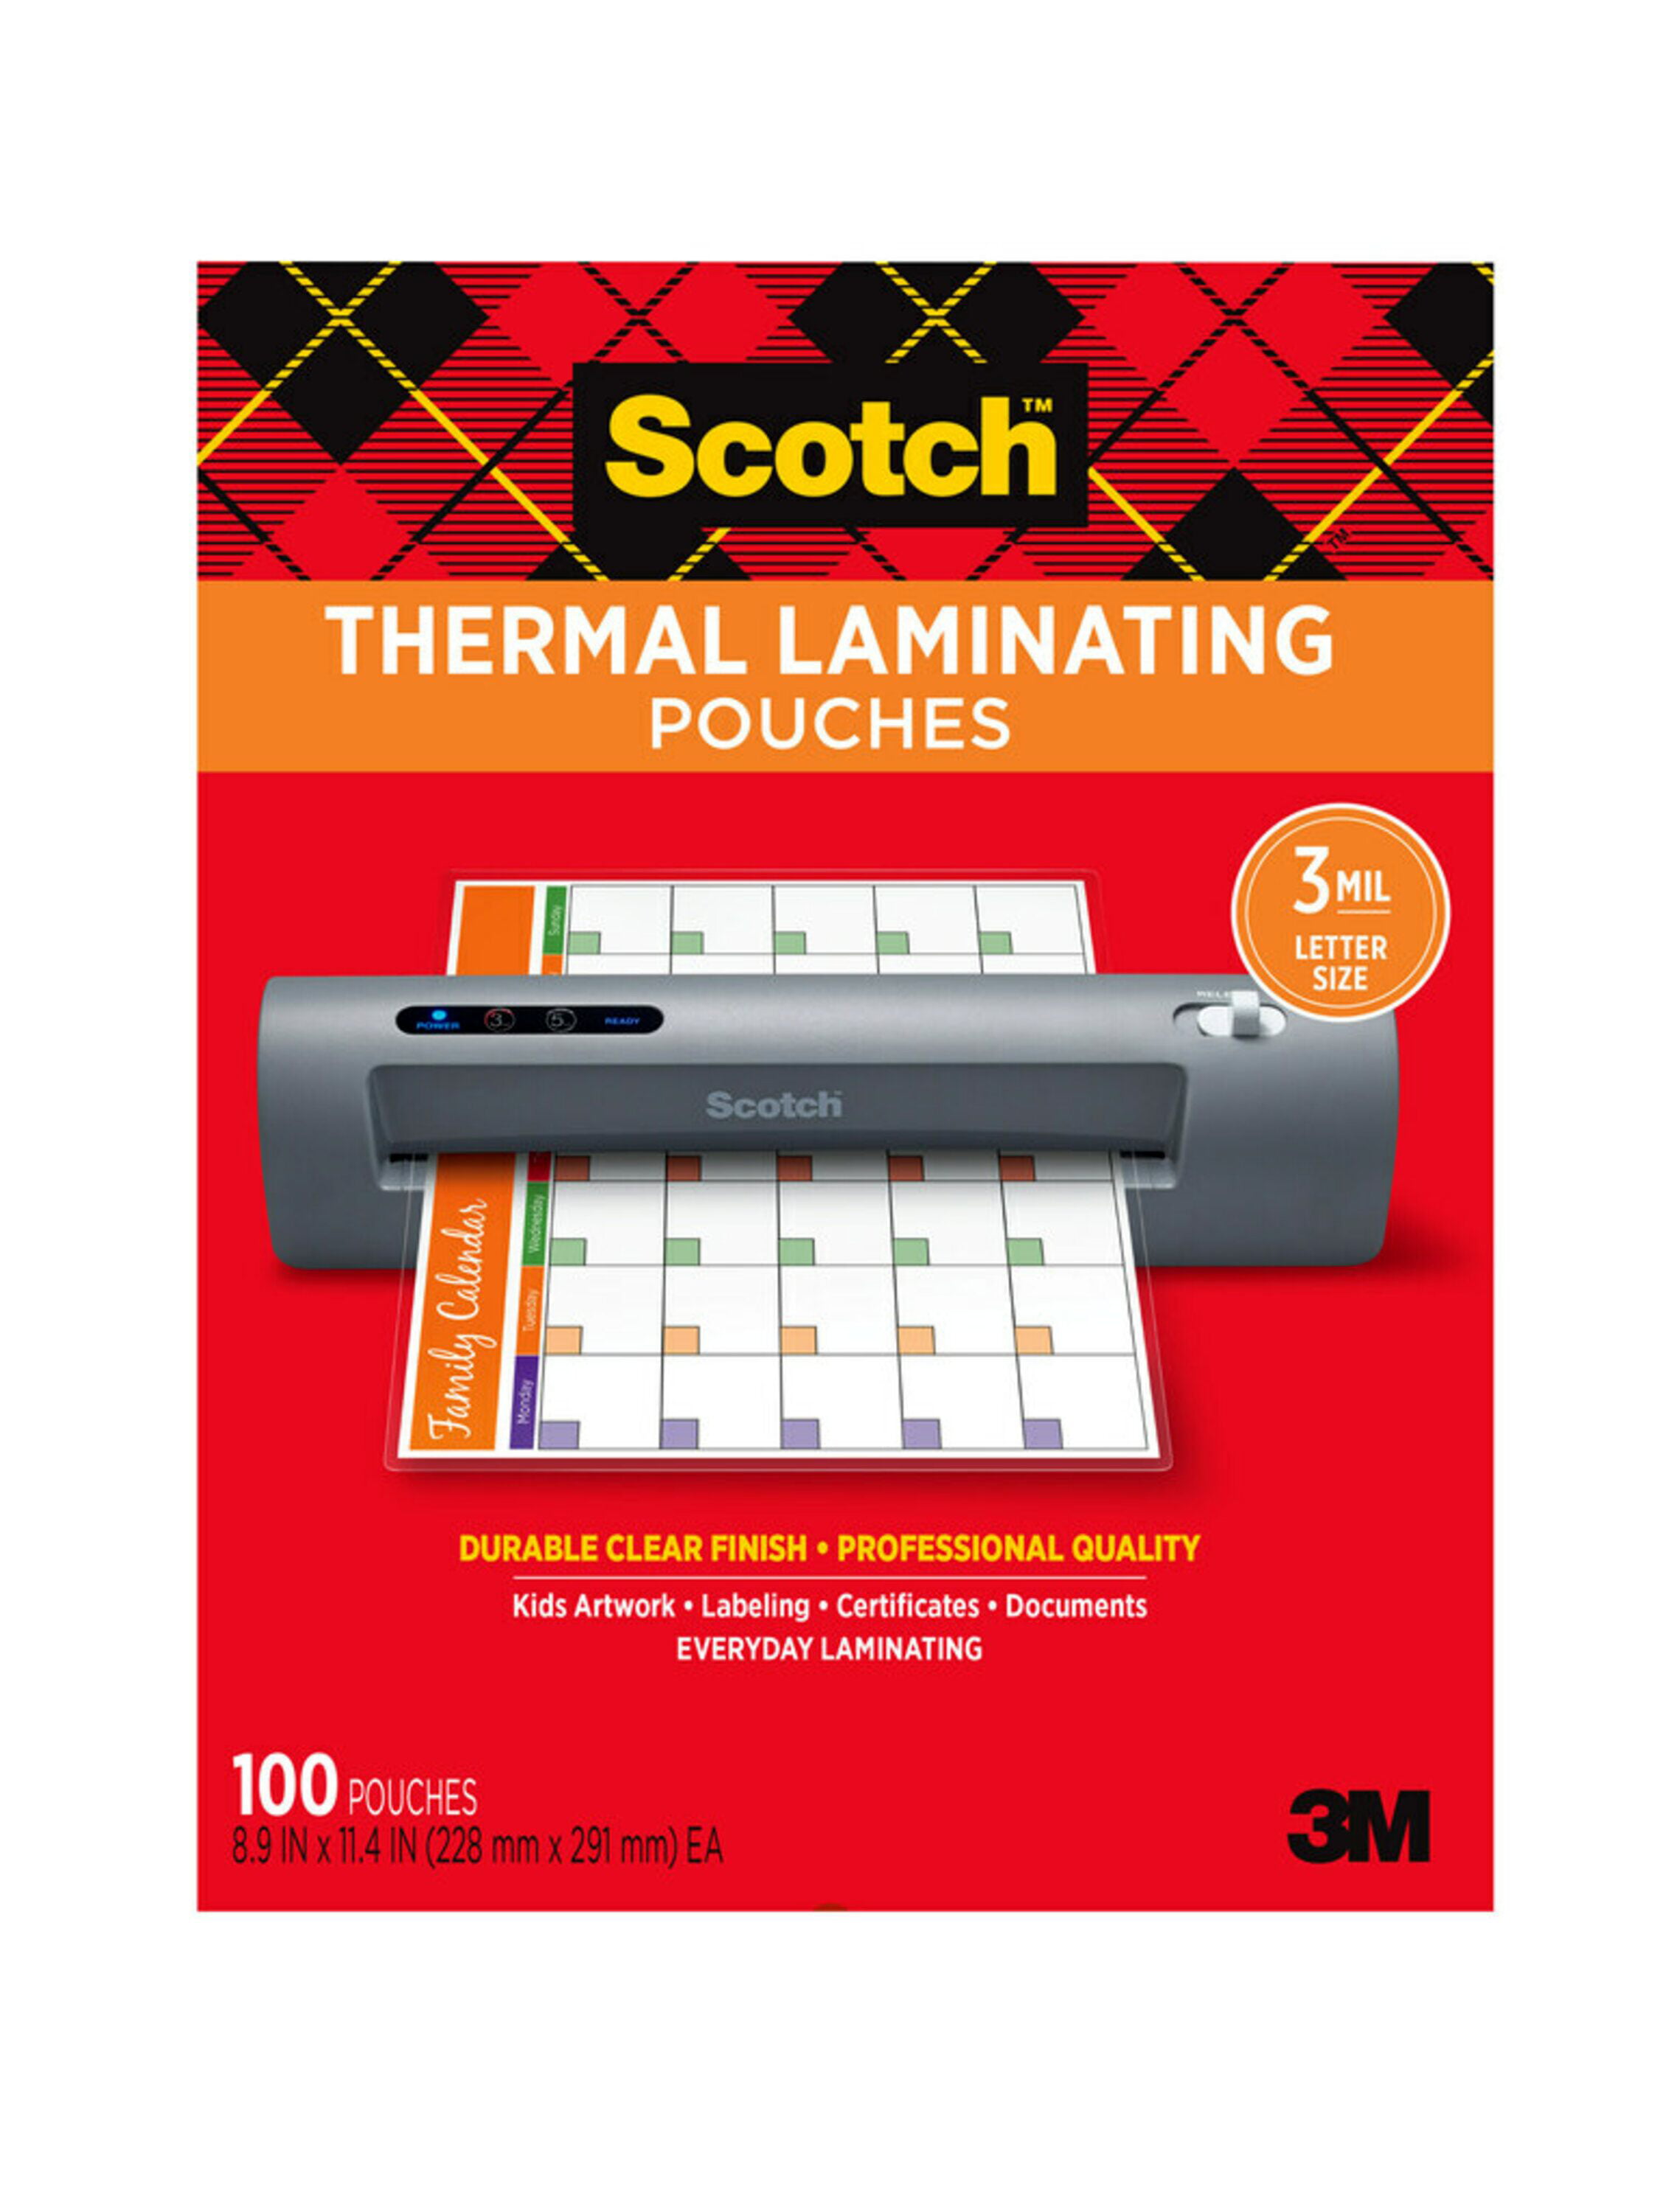 thermal laminating sheets 7mil 50 